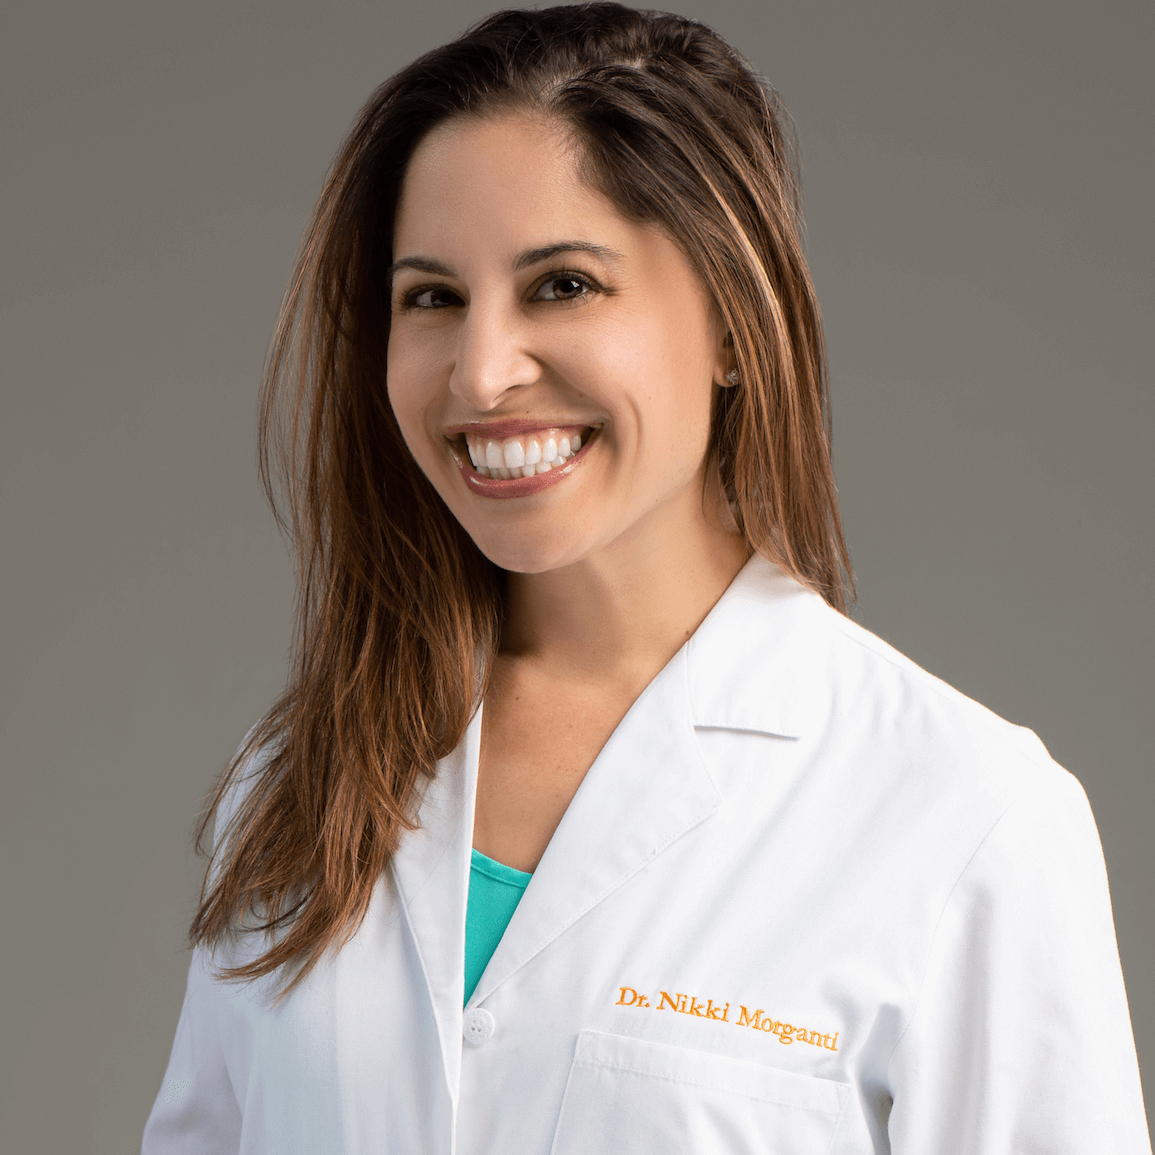 Dr. Nicole Morganti